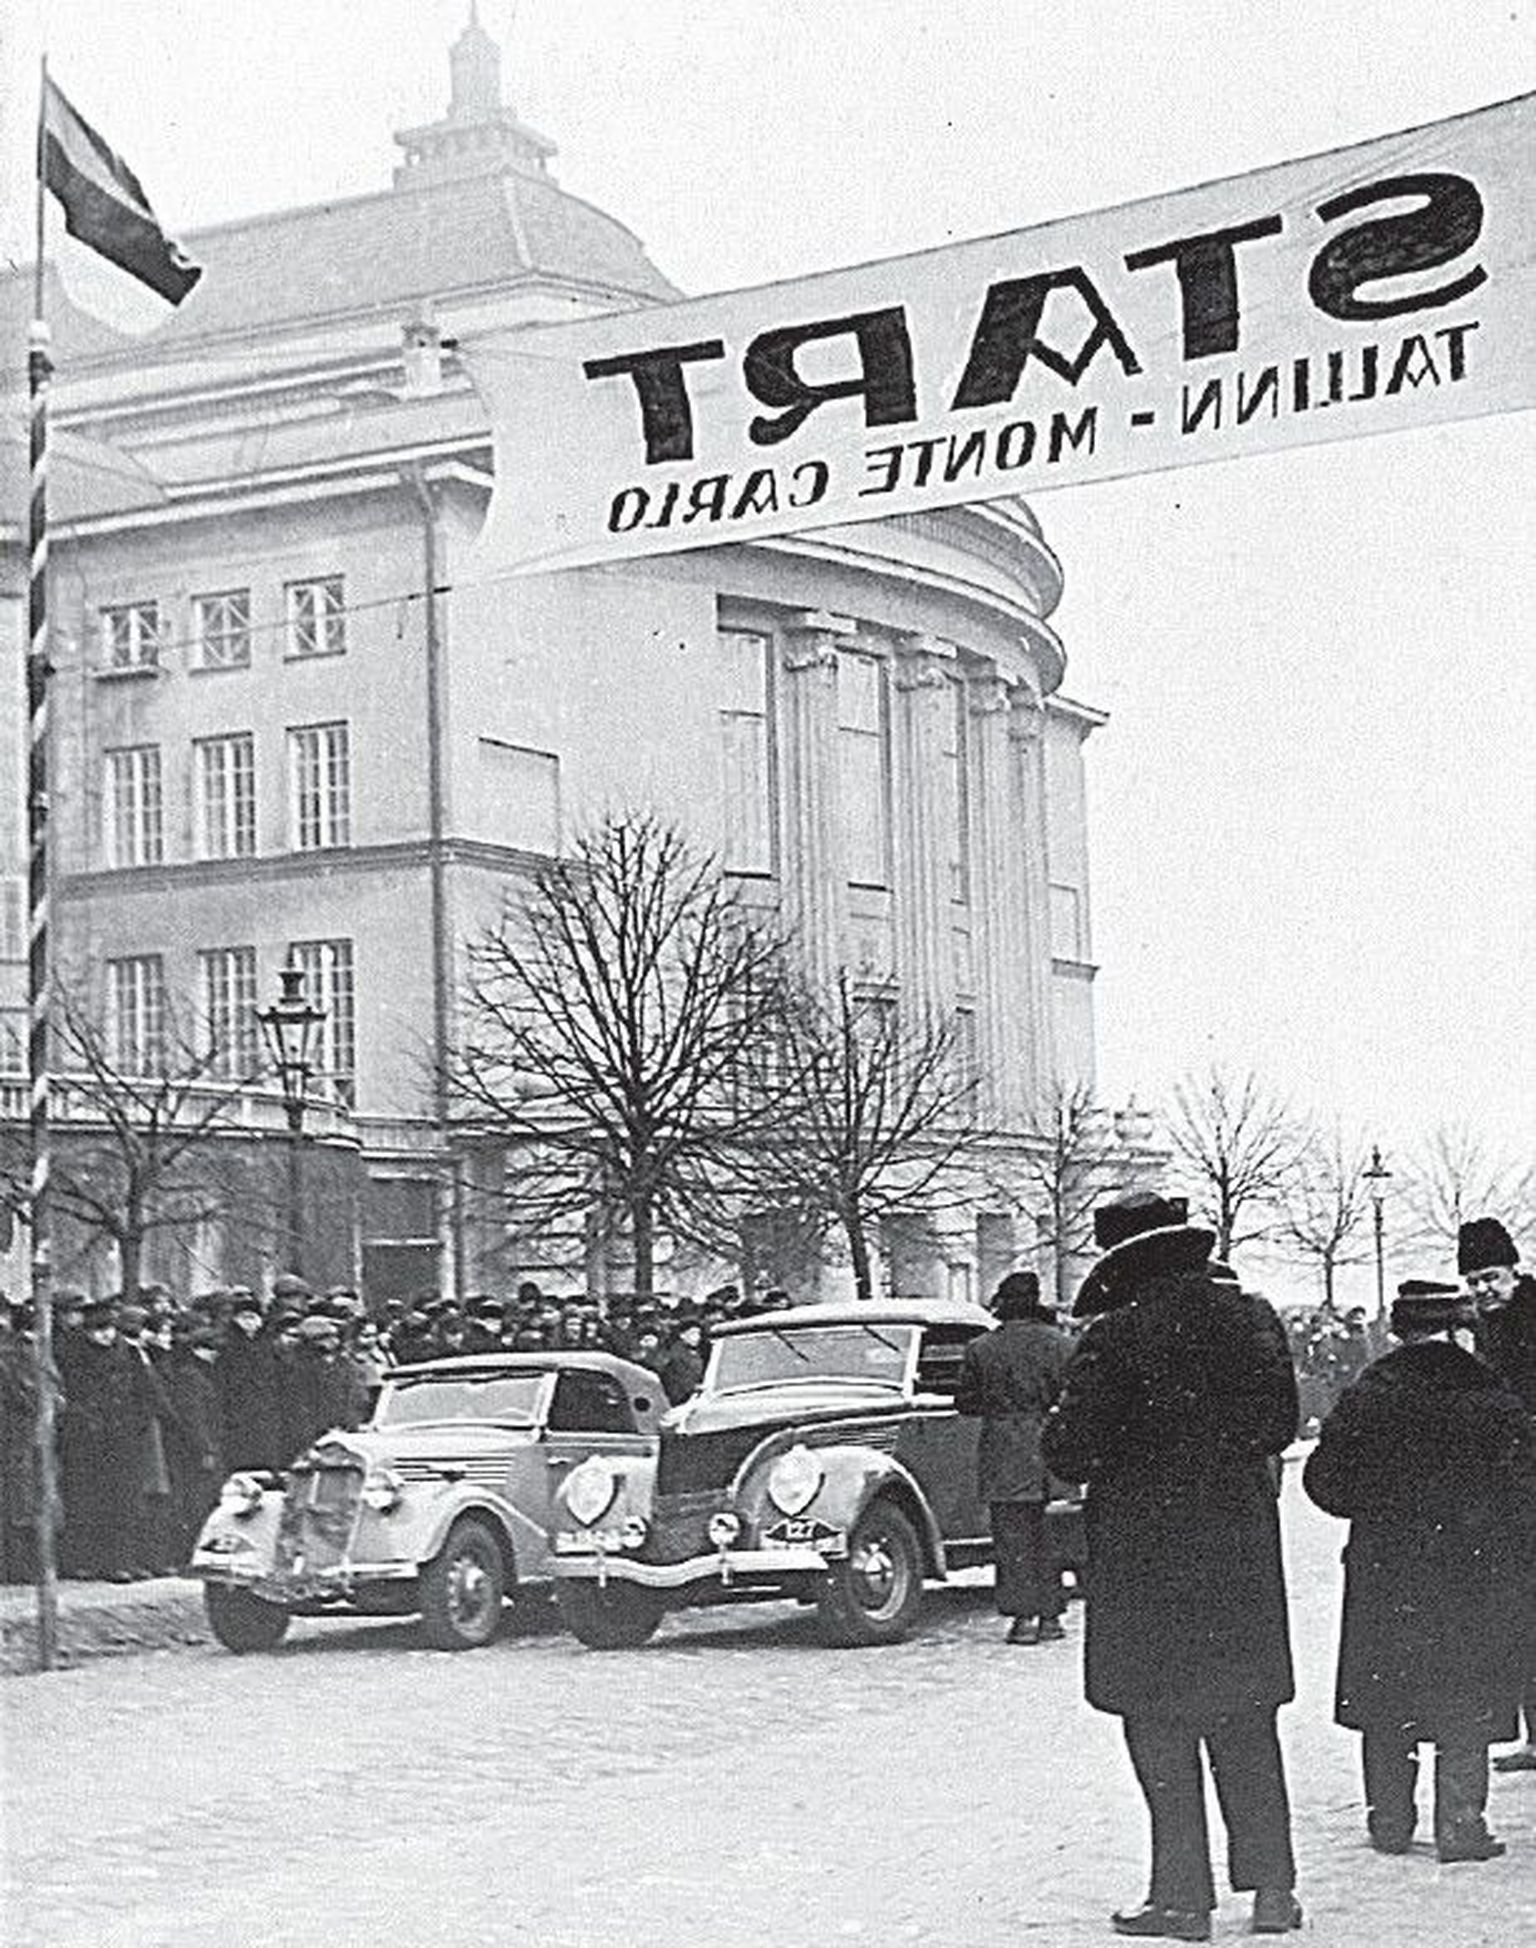 Tallinna – Monte Carlo Tähesõidu start 26. jaanuaril 1937.